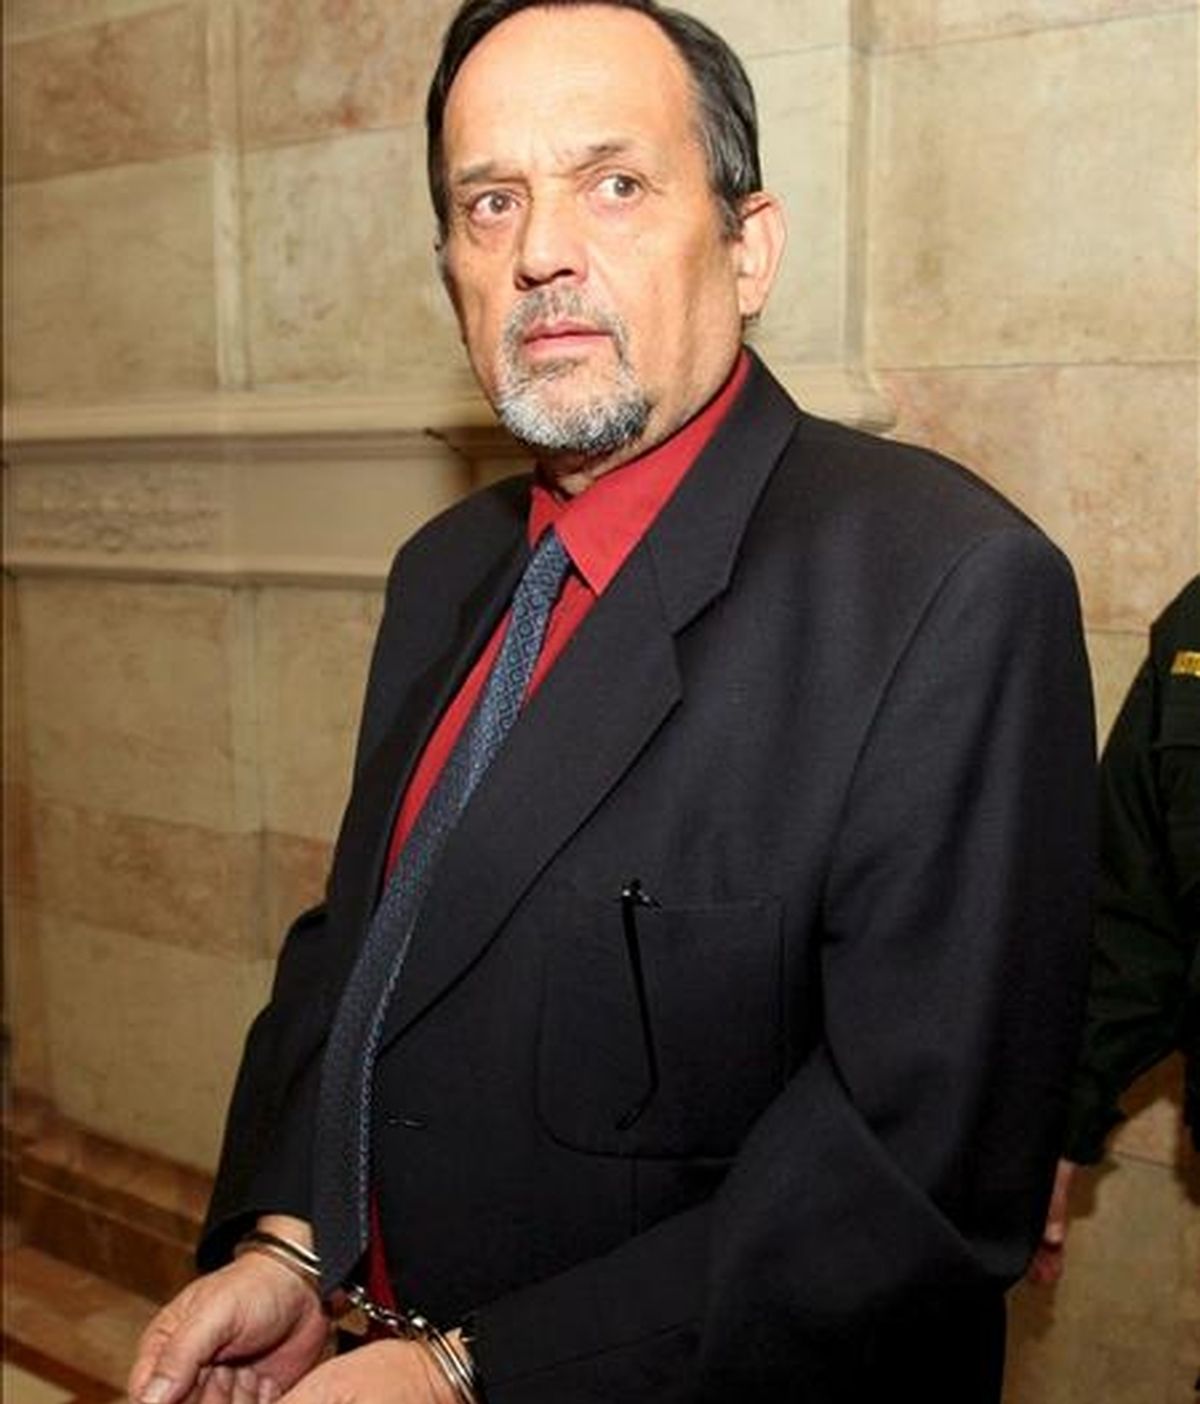 El pronazi Gerd Honsik fotografiado durante su juicio de apelación en Viena (Austria), el 3 de diciembre de 2007. En 1992, Honsik fue hallado culpable por negar el holocausto y fue sentenciado a 18 meses de prisión. Honsik huyó a España y fue arrestado en Málaga en agosto de 2007 y extraditado a Austria. EFE/Archivo